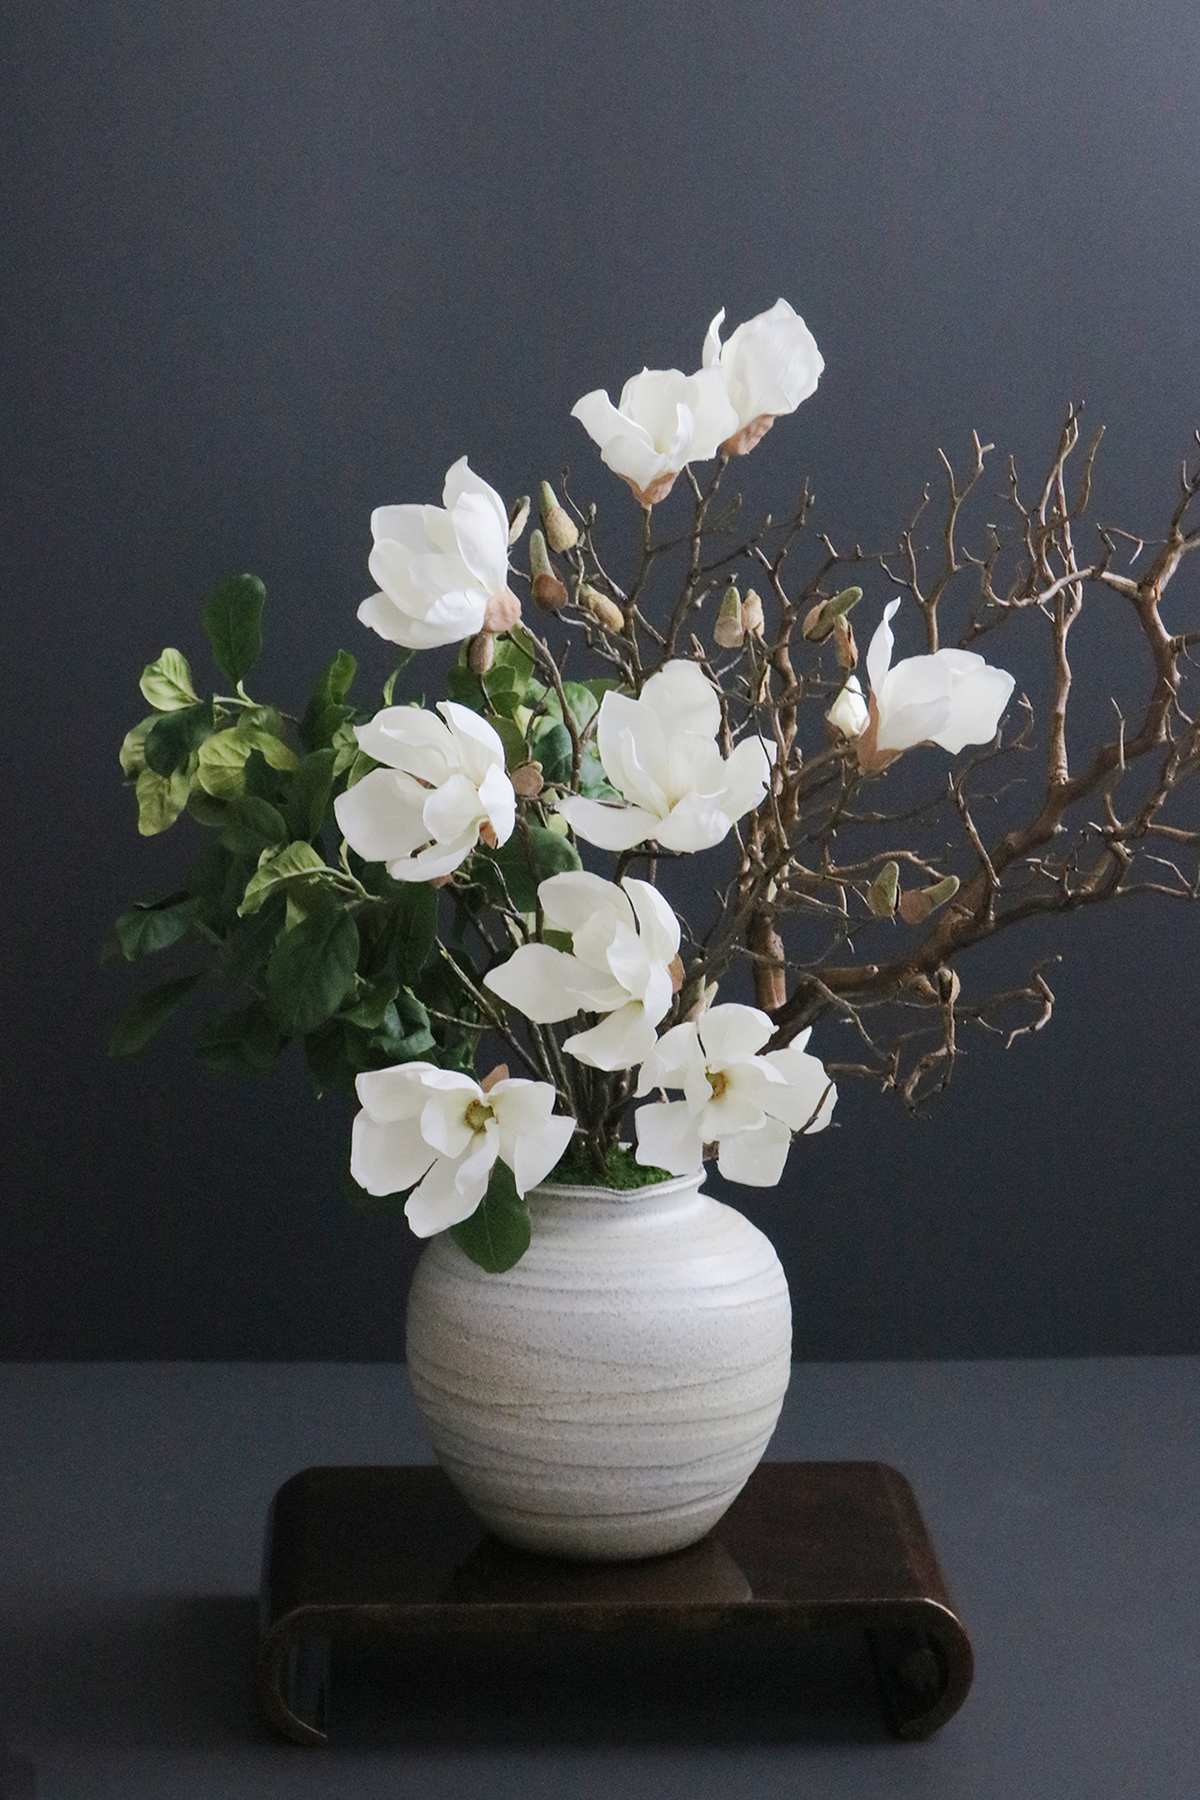 木蓮×マンザニータブランチ 和風アレンジメントスタイル 造花 アートフラワー Akanbi